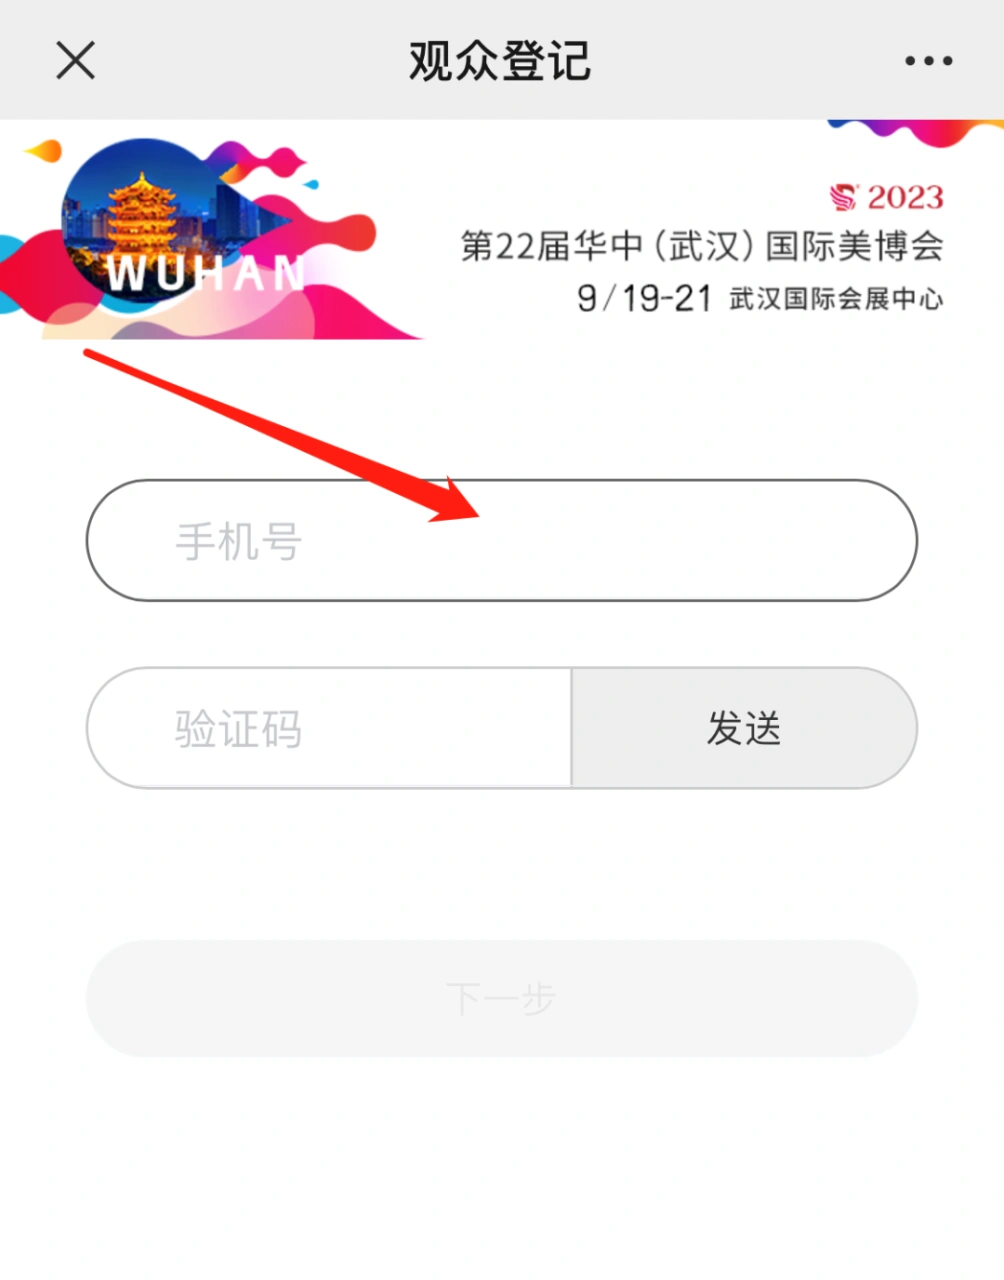 1000张门票免费送！2023武汉国际美博会发福利啦！